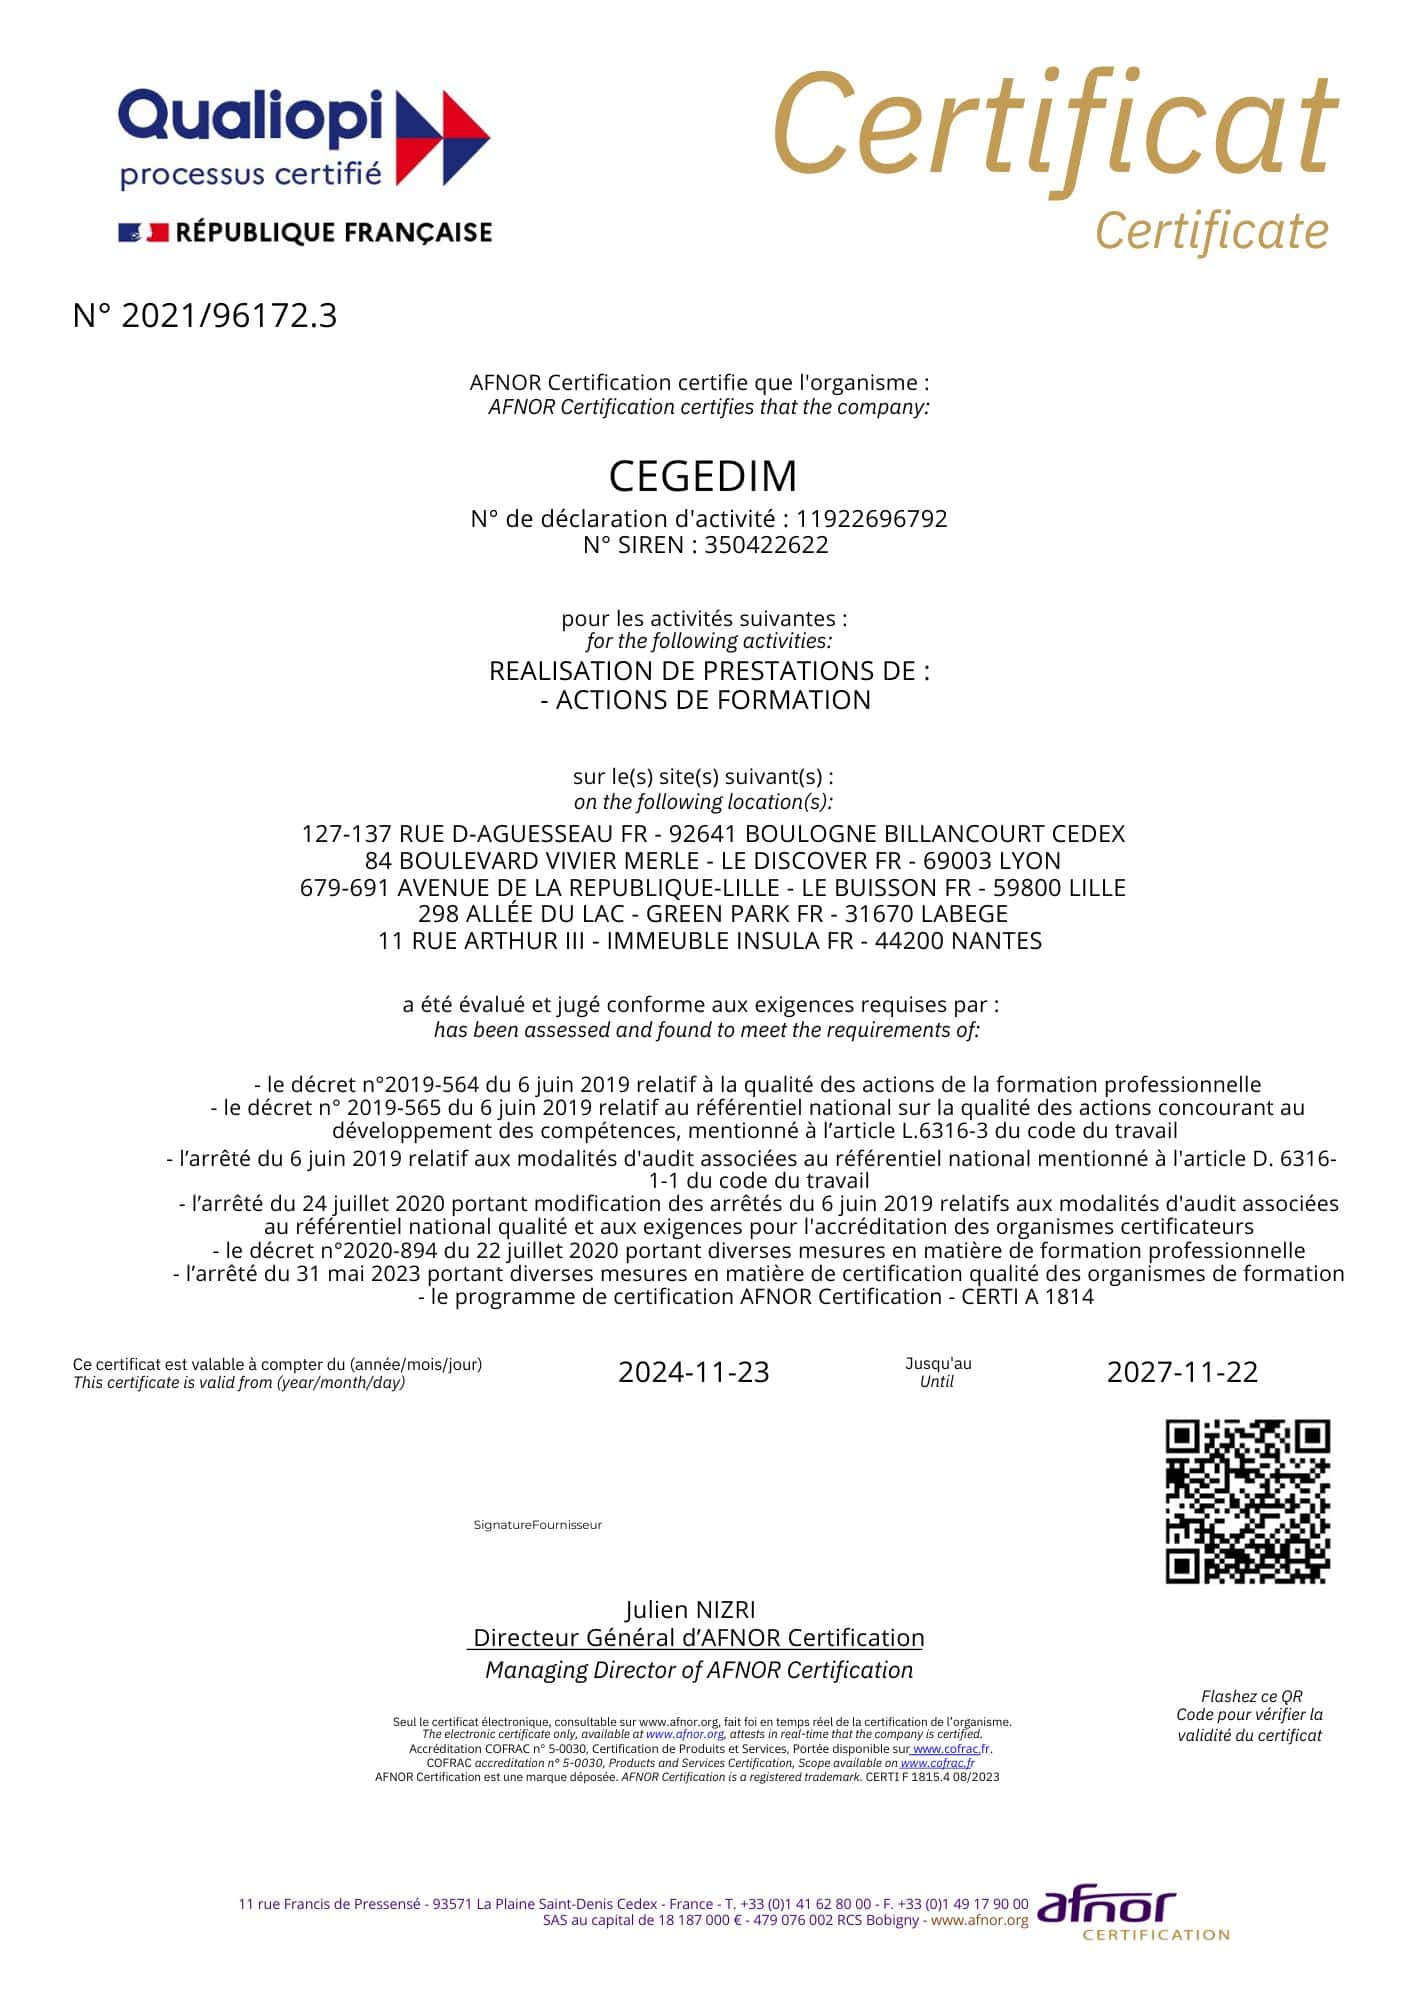 Certificat Qualiopi décerné à Cegedim pour la période 2024-2027